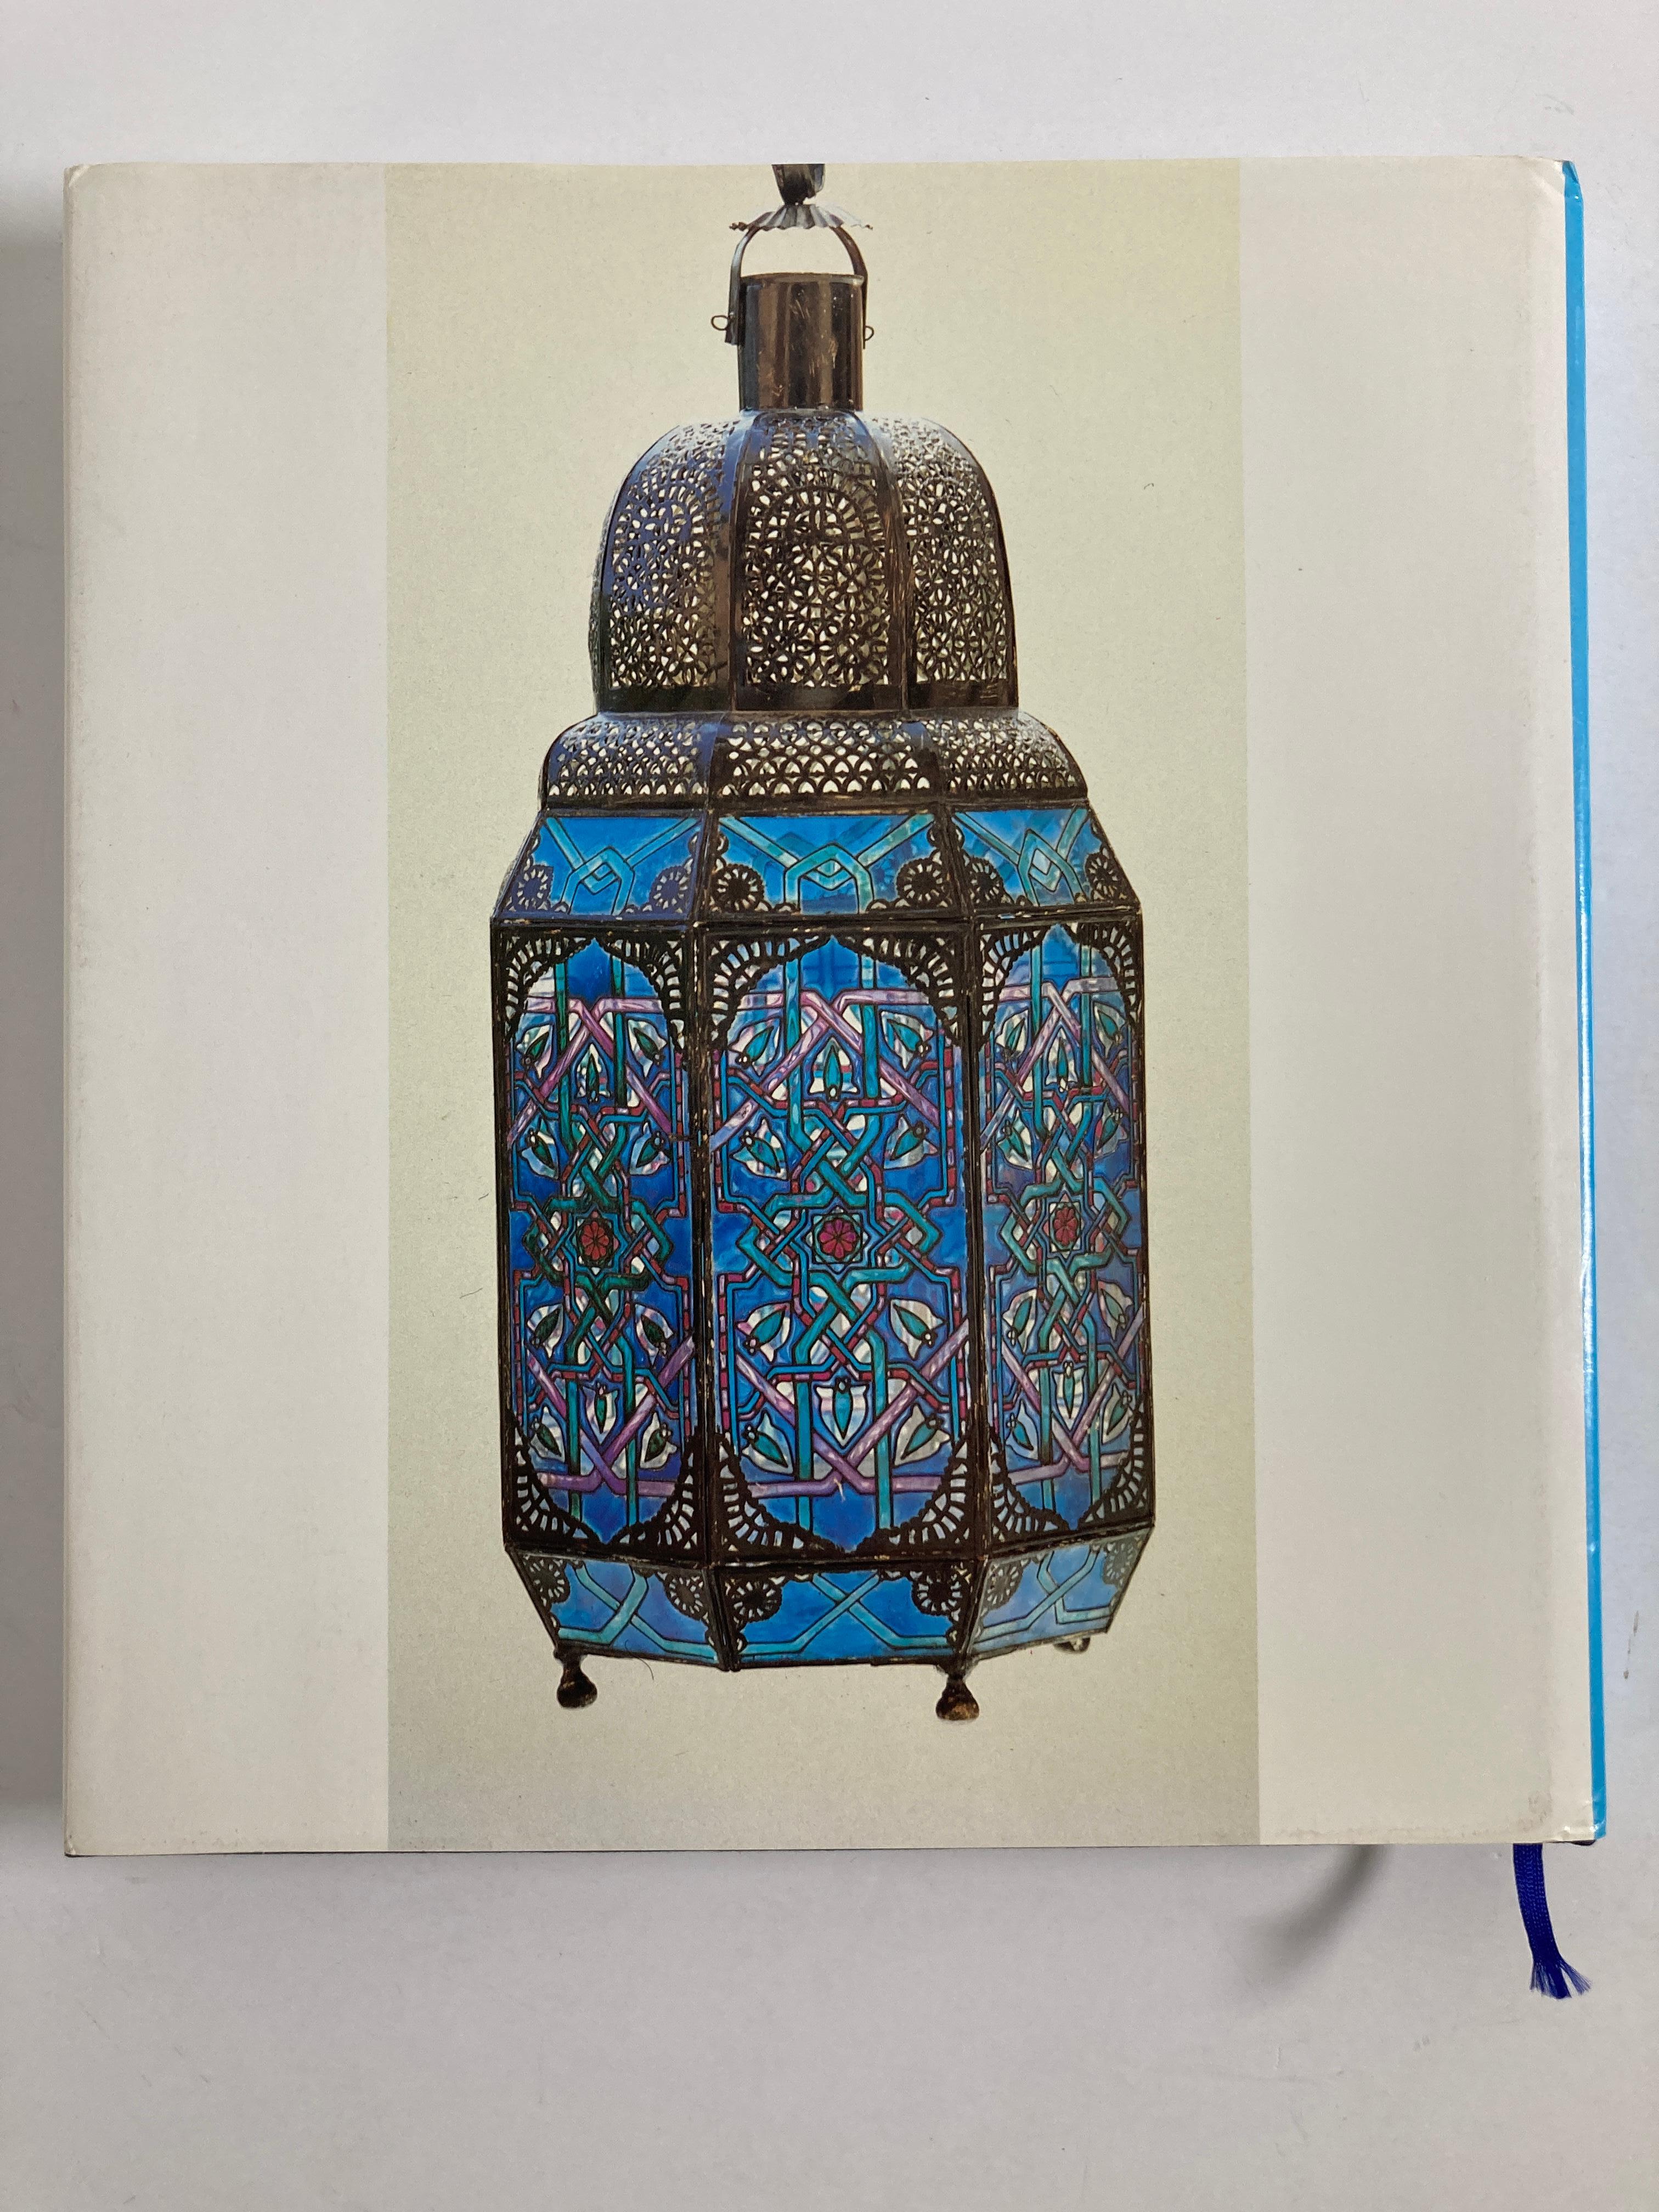 Les arts traditionnels au Maroc.
(Arts traditionnels au Maroc)
(édition française) Par Dr. Mohamed Sijelmassi
264 pages, 317 grandes photographies en couleur de bijoux, de meubles, d'objets en céramique, de textiles, de carreaux et d'autres exemples